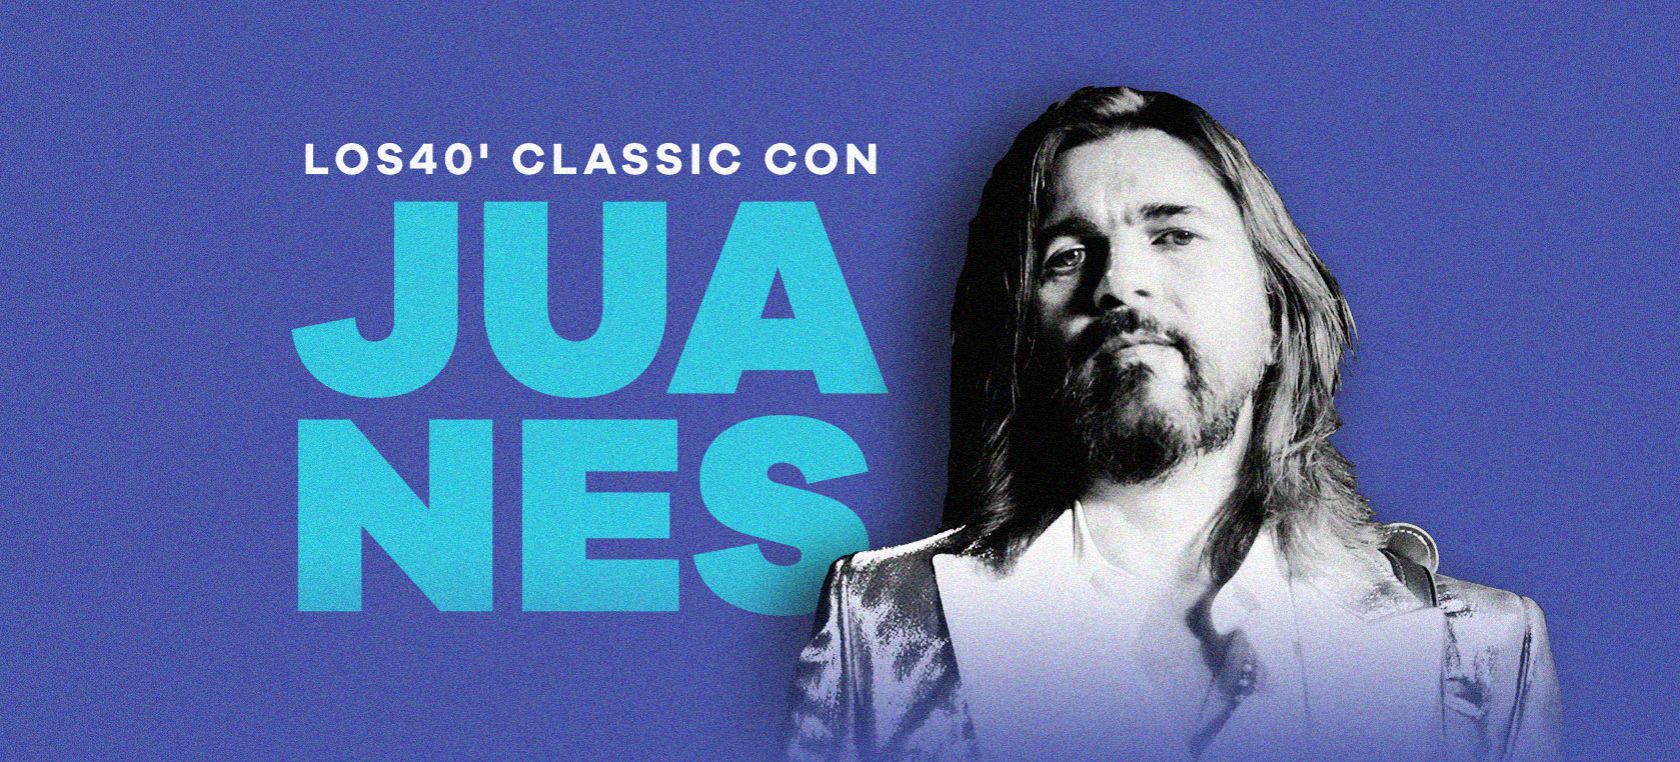 Estrenamos LOS40’ Classic con Juanes